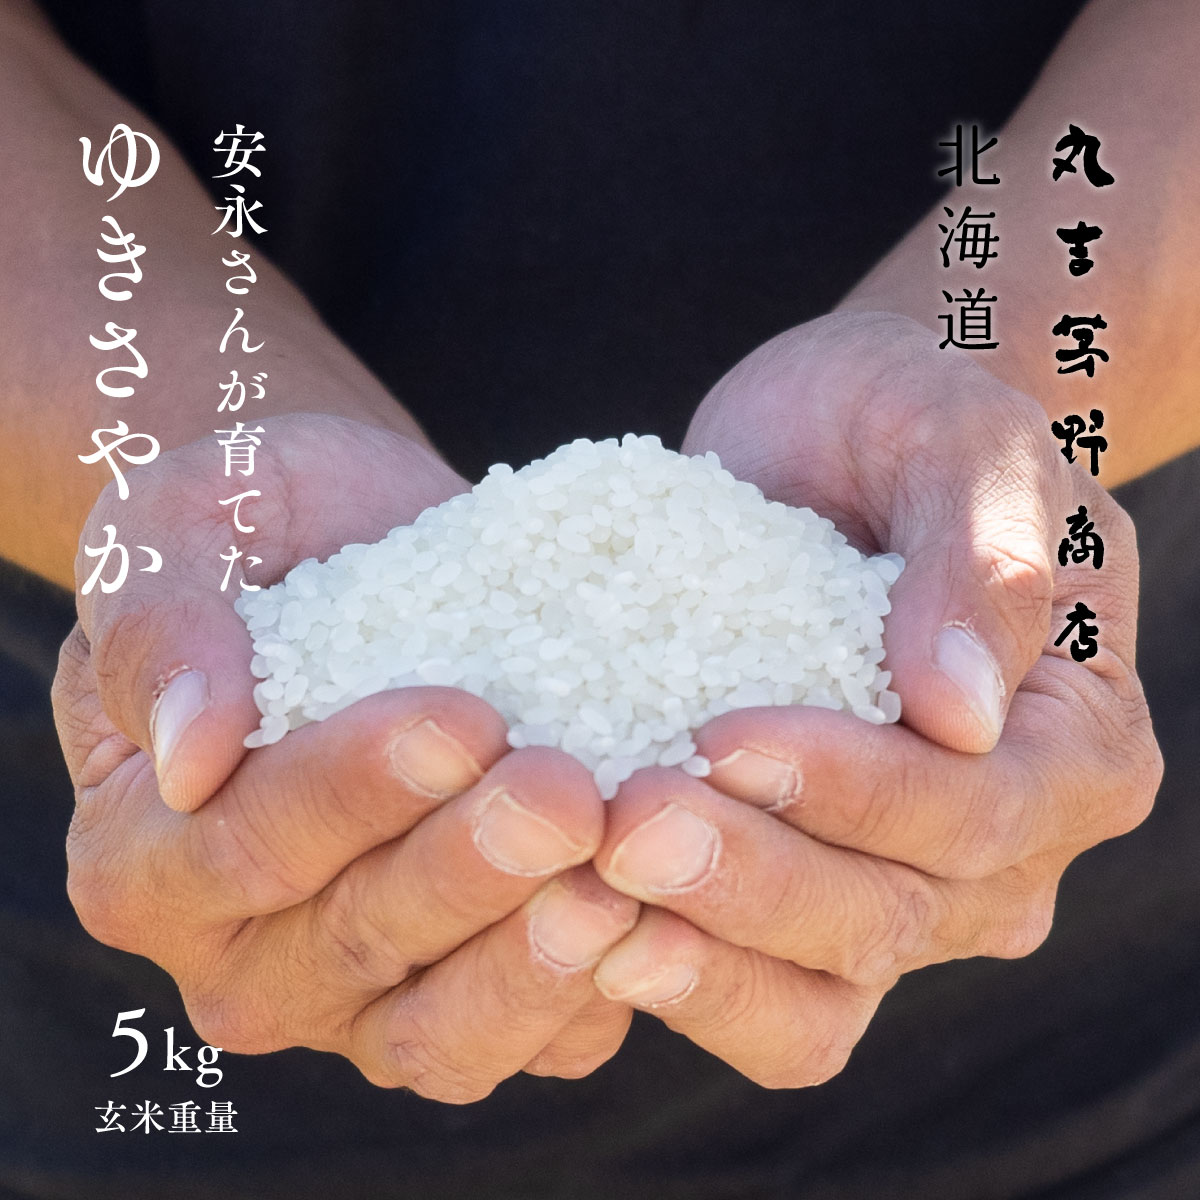 安永さんが育てた「ゆきさやか」 5kg 北海道妹背牛産 玄米 白米 分づき米 令和5年産 米 お米 送料無料 オプションで真空パックに変更可